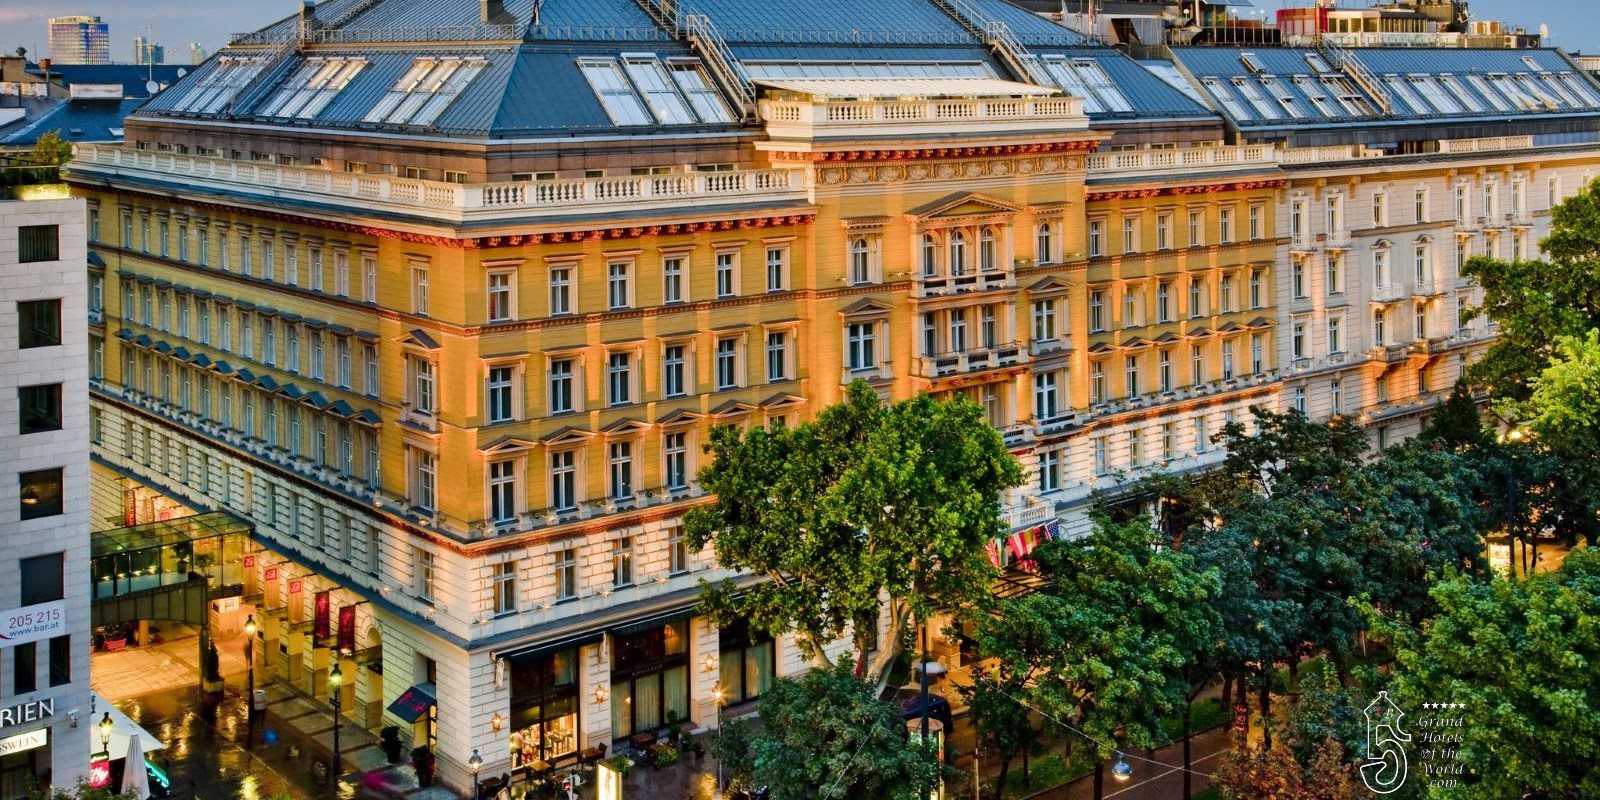 Grand Hotel in Vienna